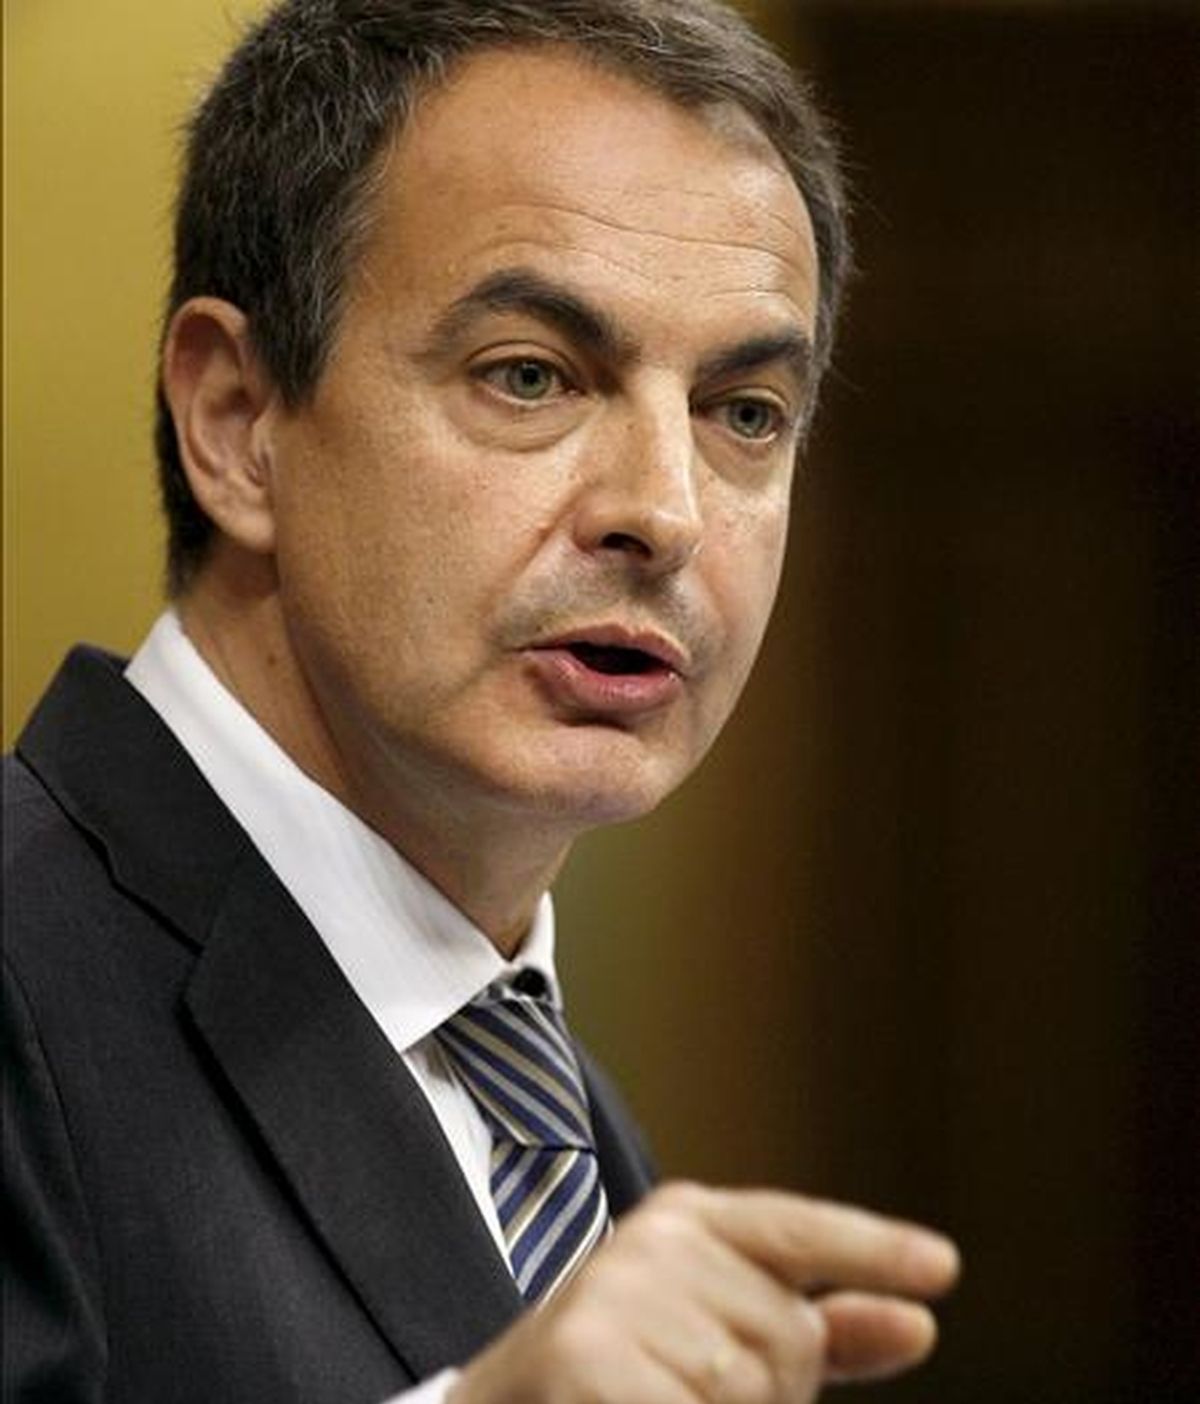 En la imagen, el presidente del Gobierno, José Luis Rodríguez Zapatero, durante su intervención en la sesión de control al Ejecutivo celebrada hoy en el Congreso de los Diputados, donde informó sobre la reciente remodelación del Gobierno EFE